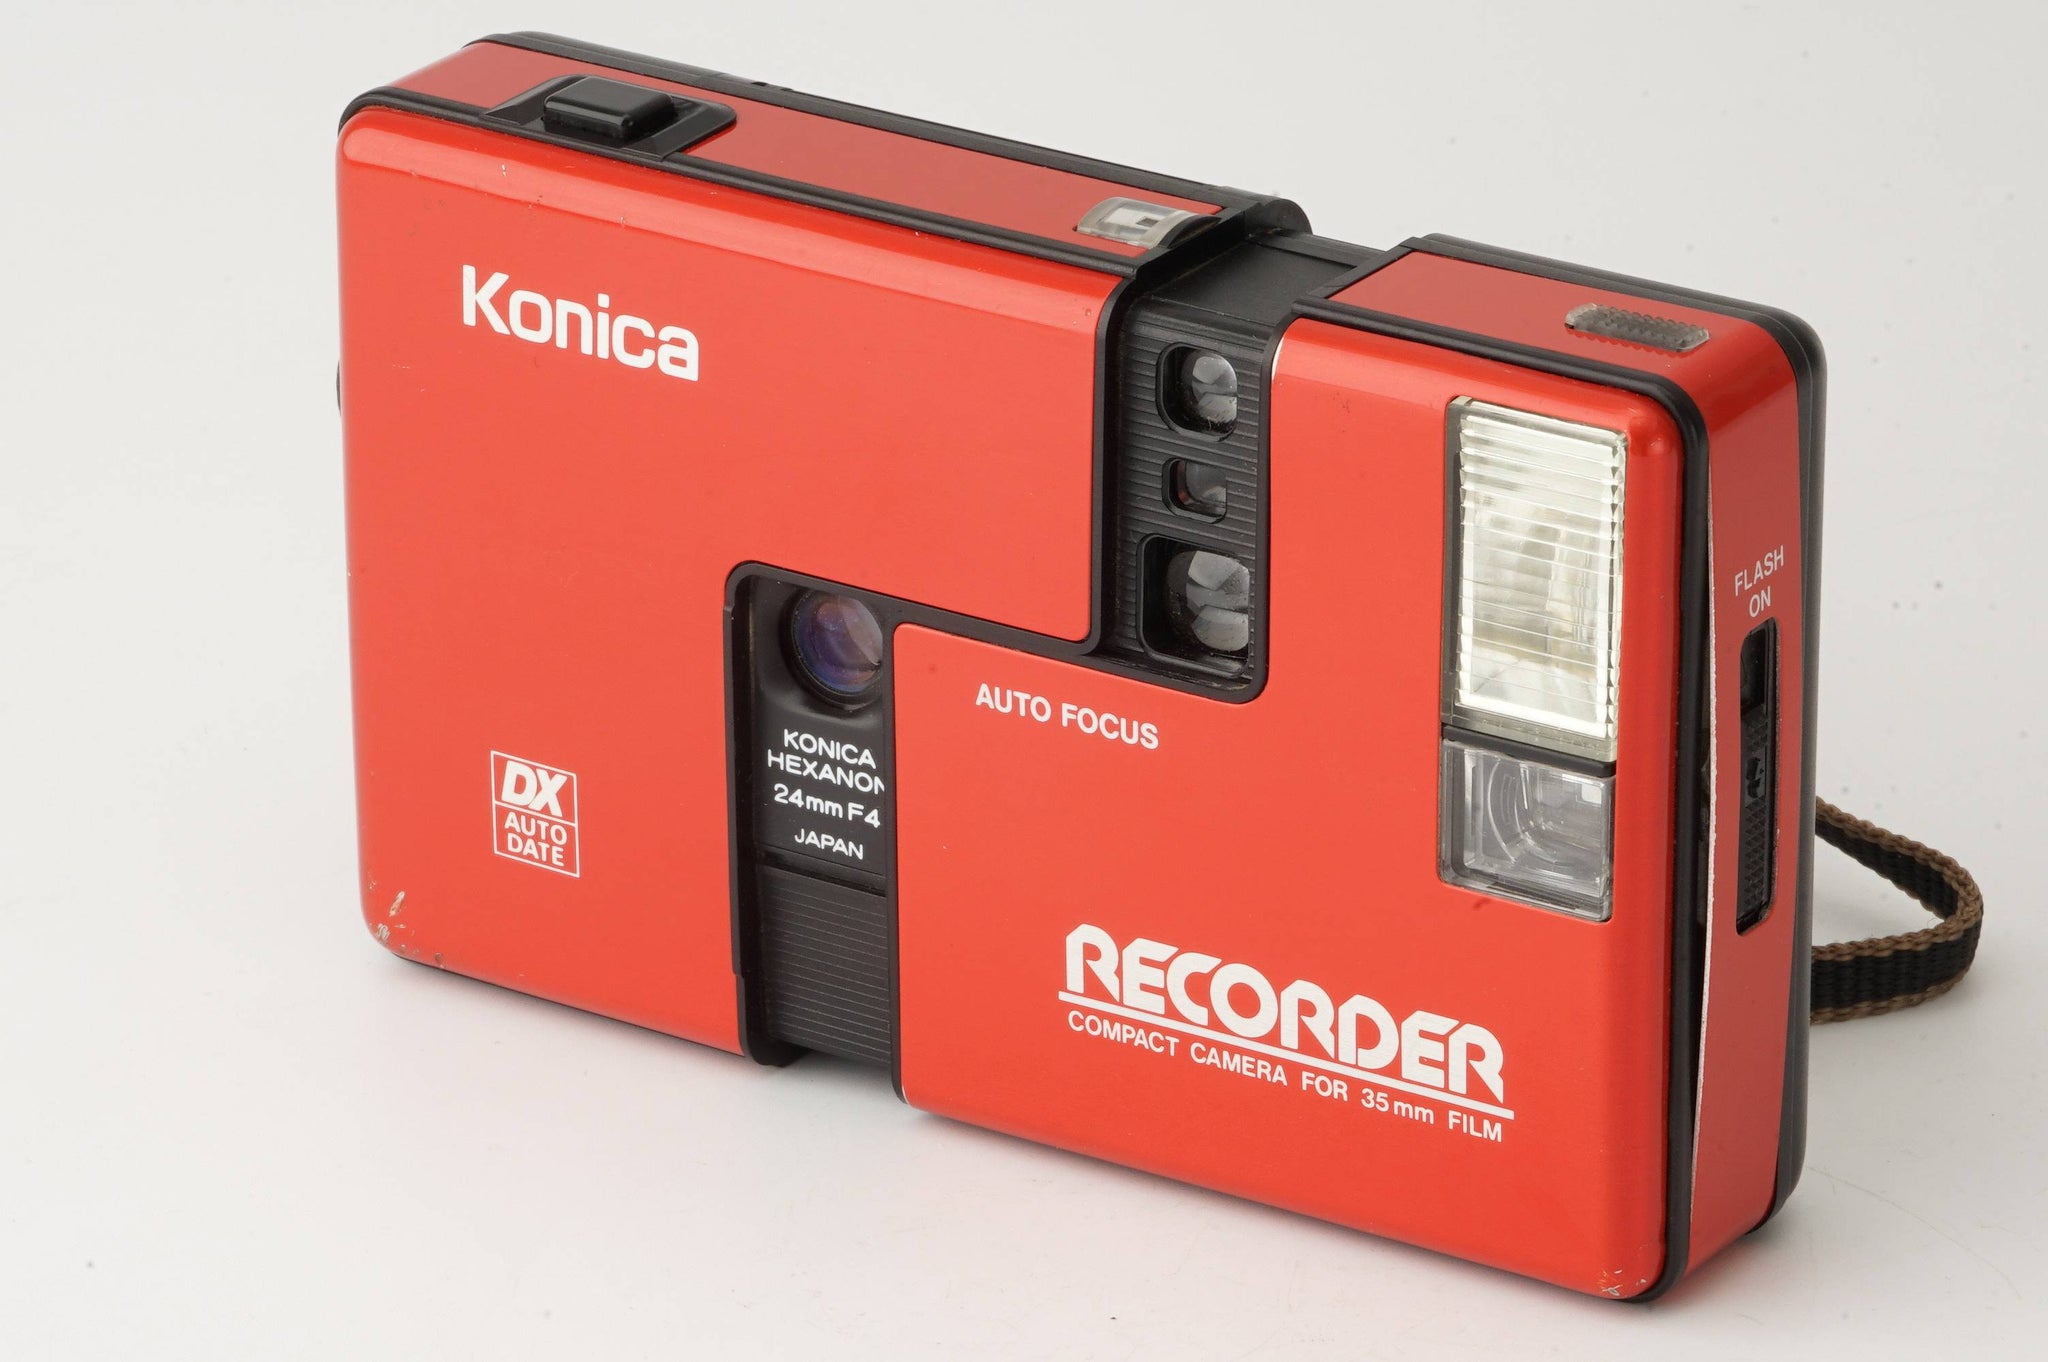 コニカ Konica Auto Focus レコーダー Recorder DX Auto Date レッド 